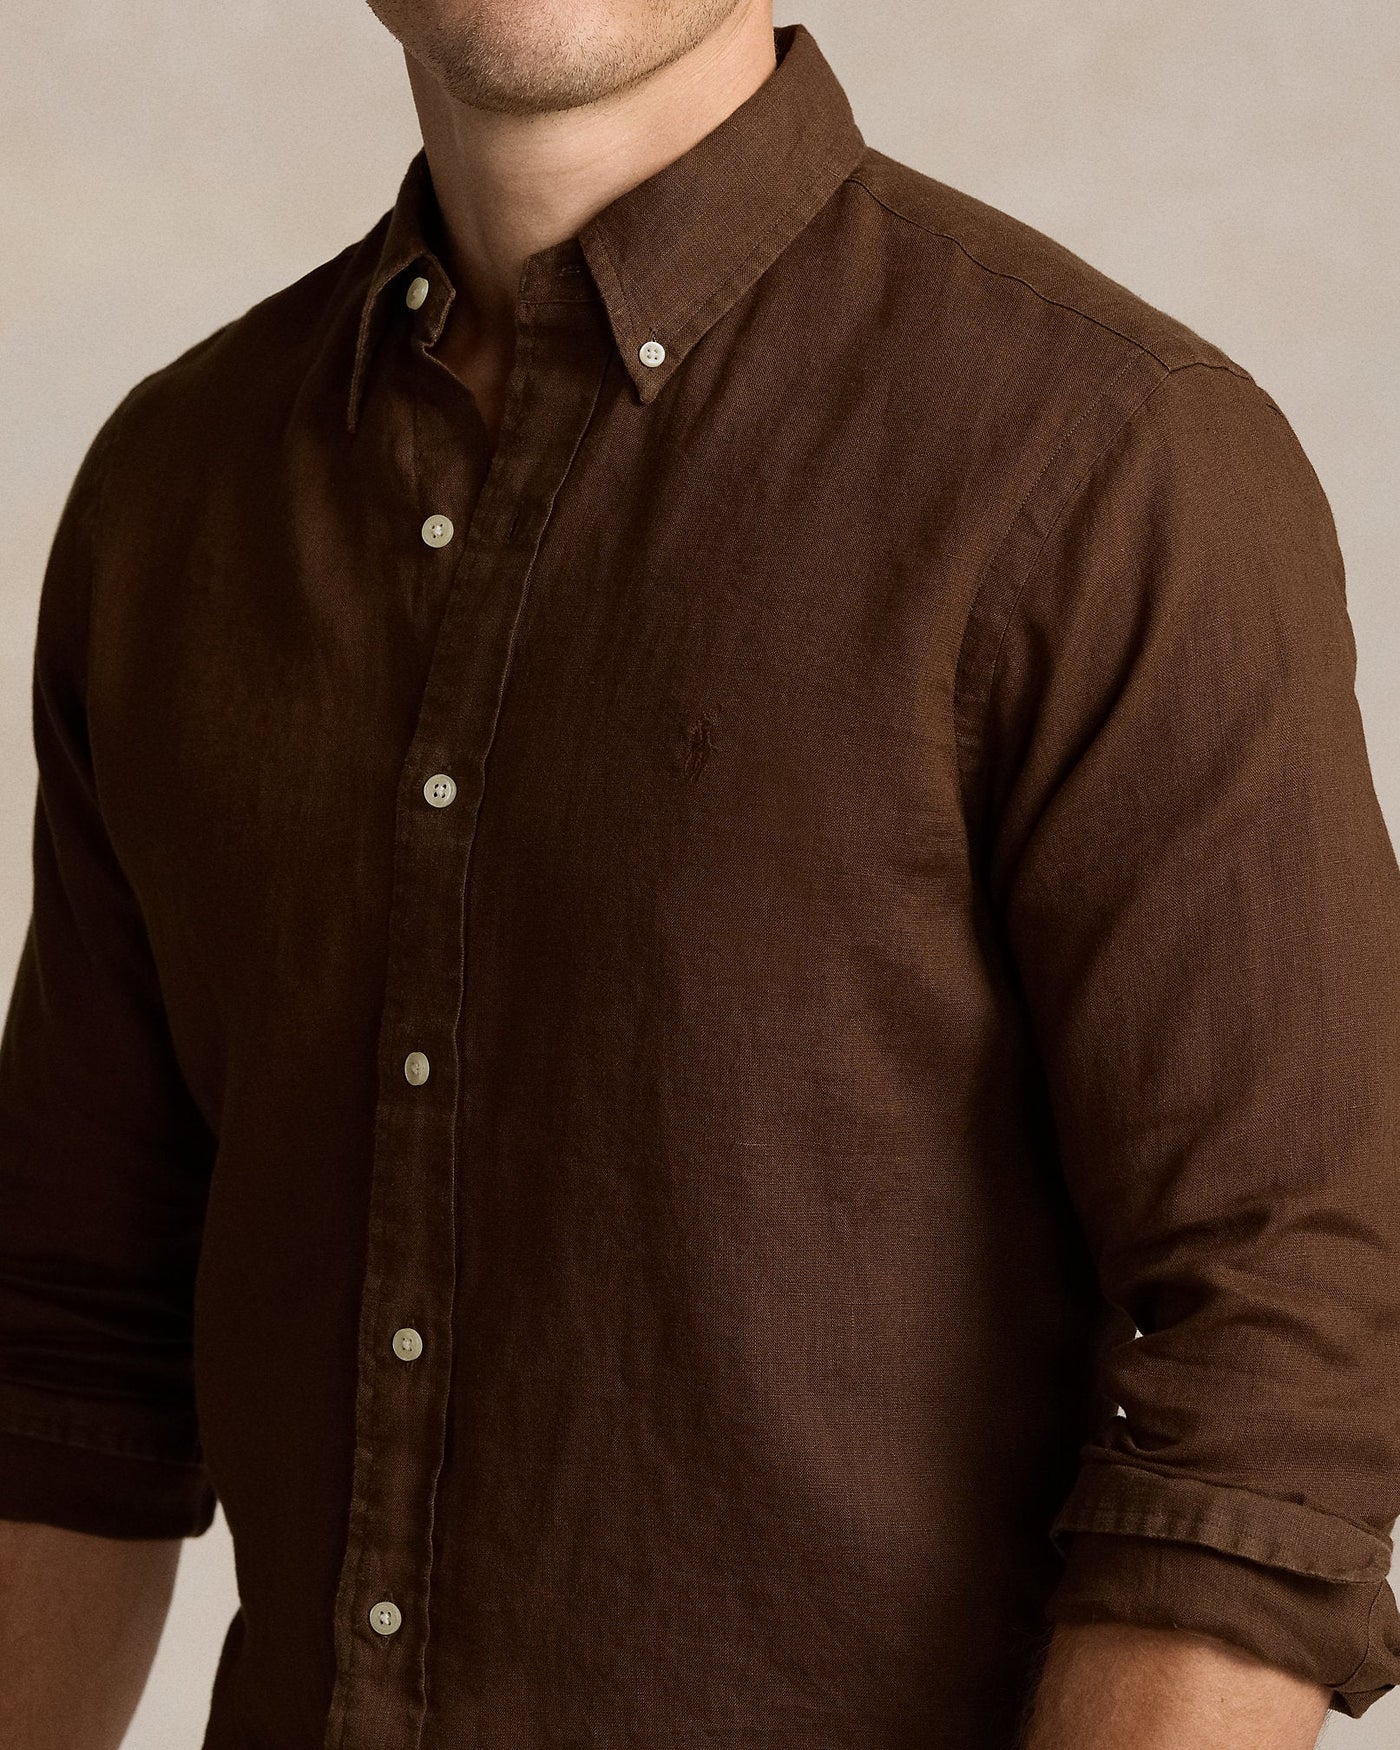 Polo Ralph Lauren - Chemise marron ajustée en lin - Lothaire